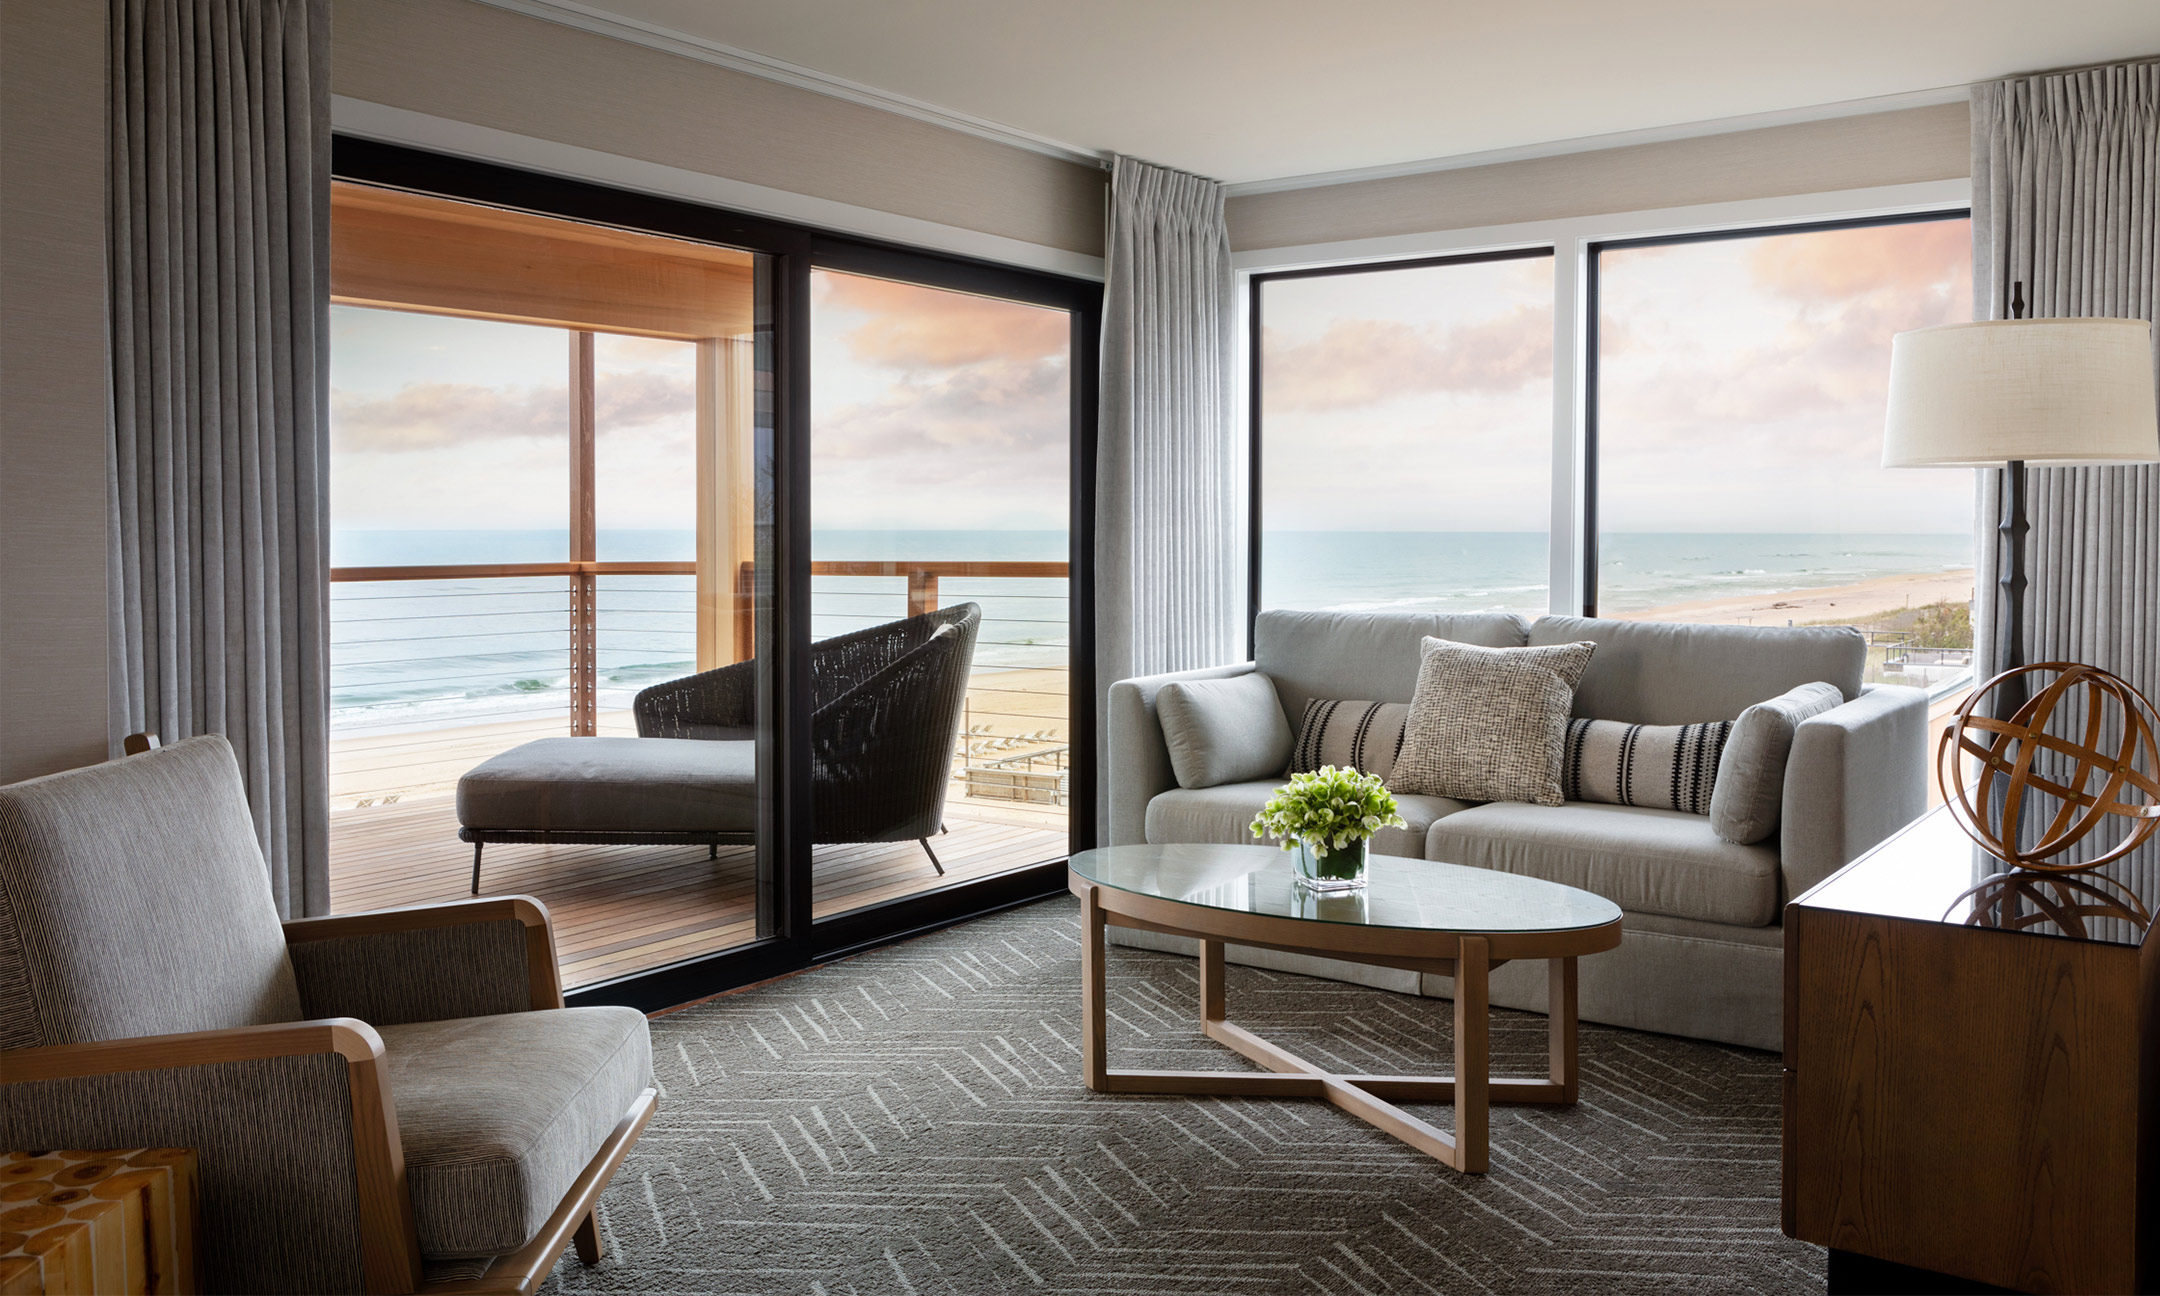 Deluxe Two bedroom Suite living room with balcony overlooking the ocean 